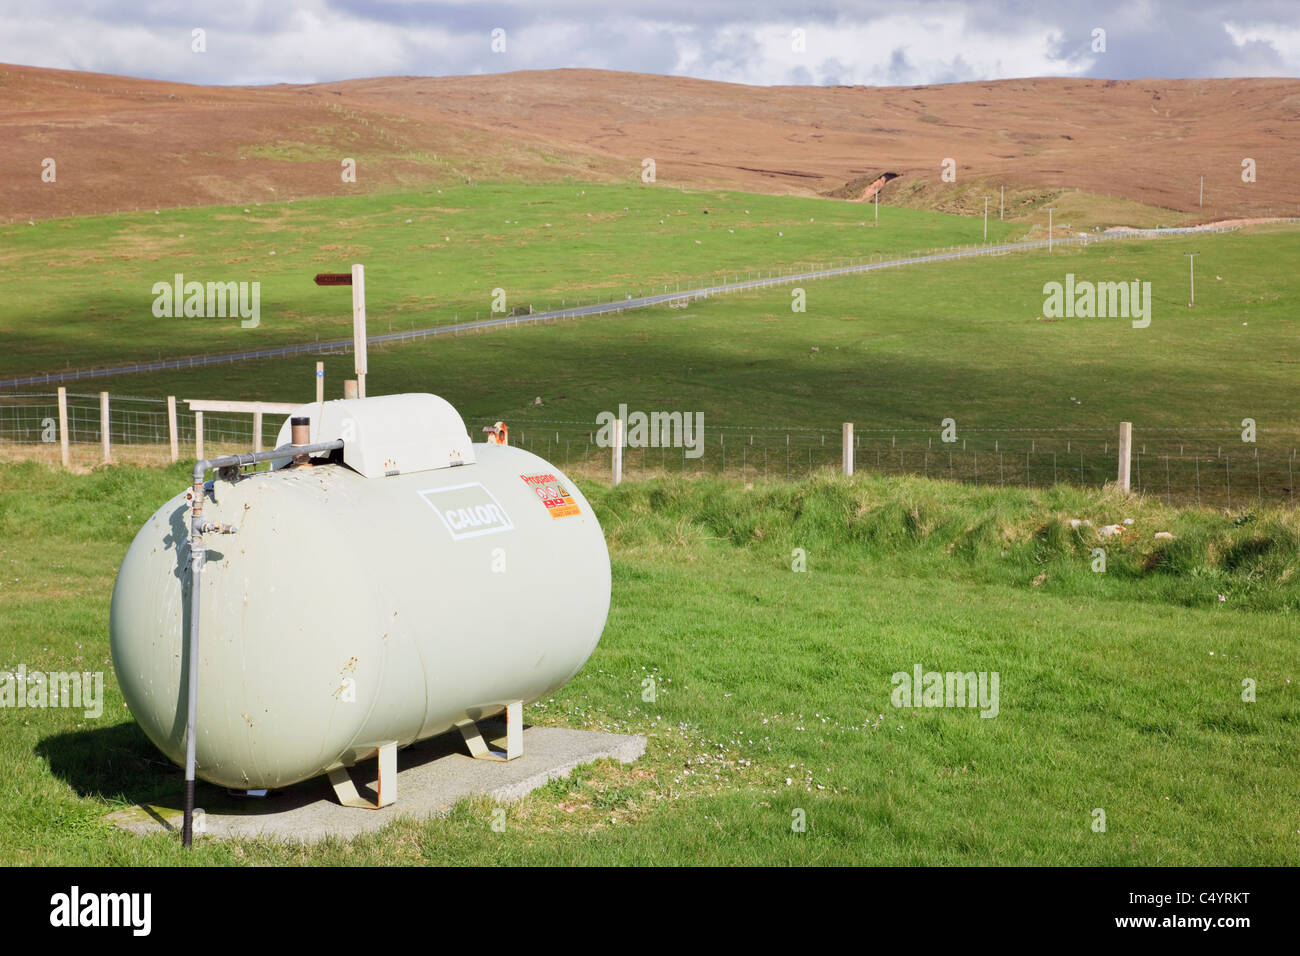 Inländische Calor Gas Tank im Freien in abgelegenen Land Lage. Shetlandinseln, Schottland, Großbritannien, Großbritannien. Stockfoto